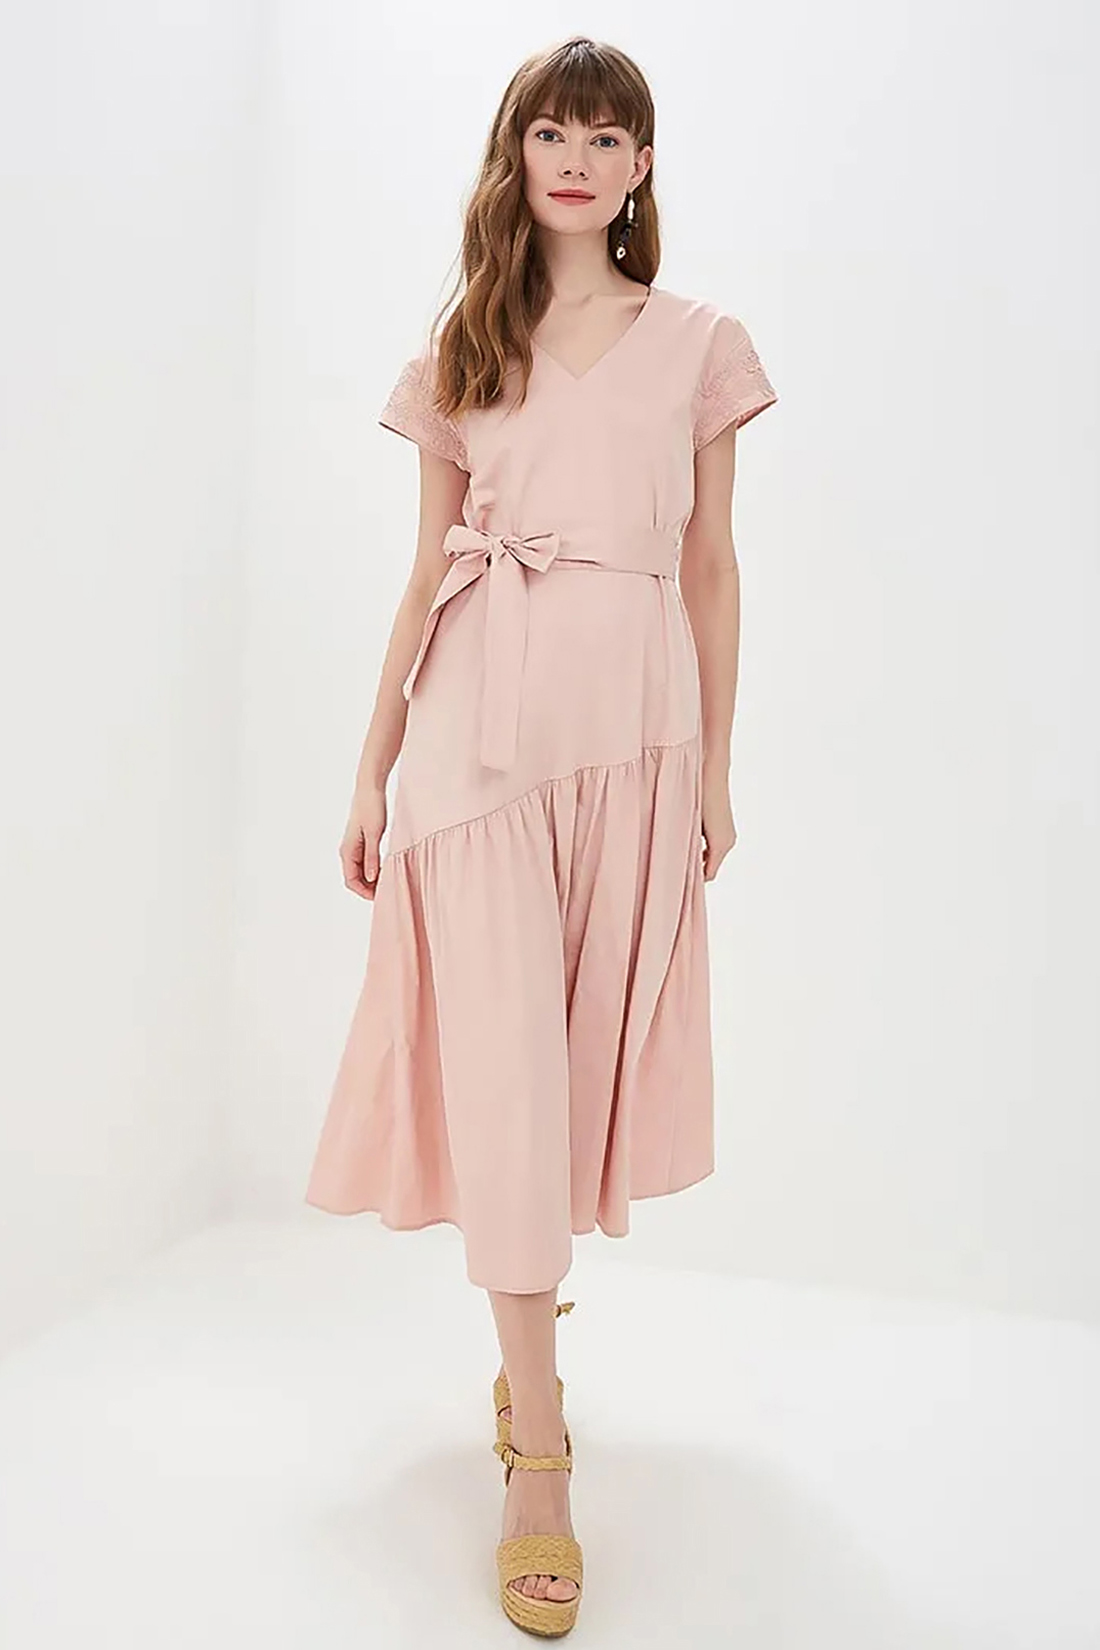 Платье с асимметричной оборкой (арт. baon B459050), размер M, цвет розовый Платье с асимметричной оборкой (арт. baon B459050) - фото 1